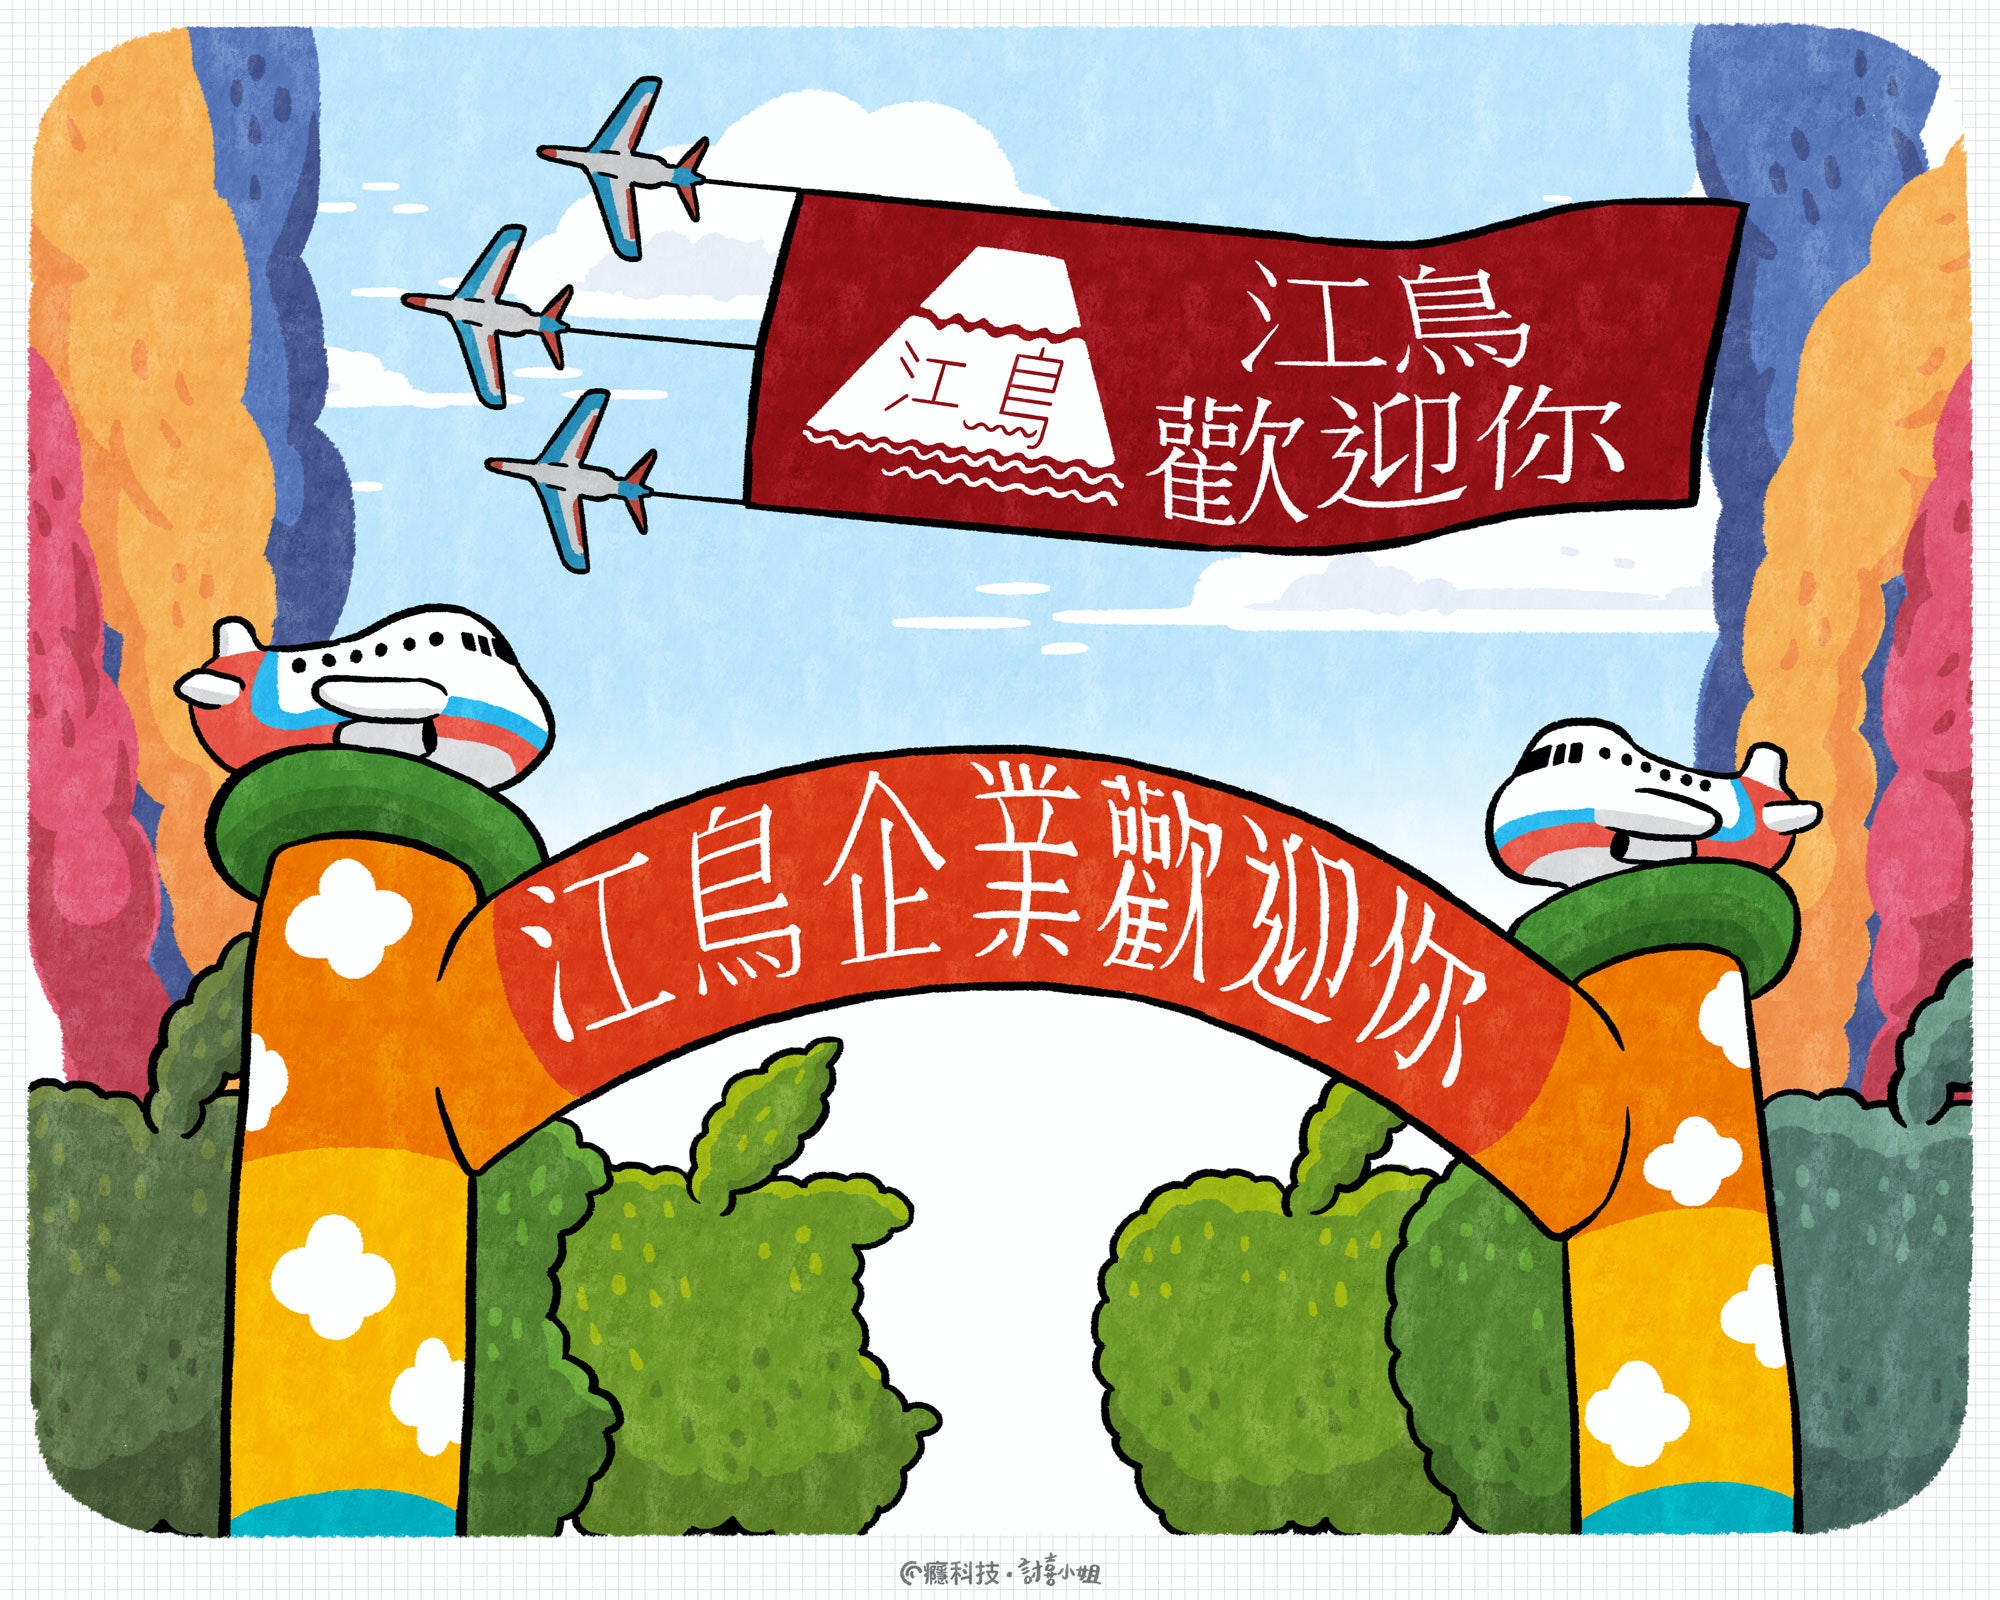 照片中提到了江島企業劉如你、江鳥、歡迎你，包含了動畫片、剪貼畫、藝術、動畫片、海報